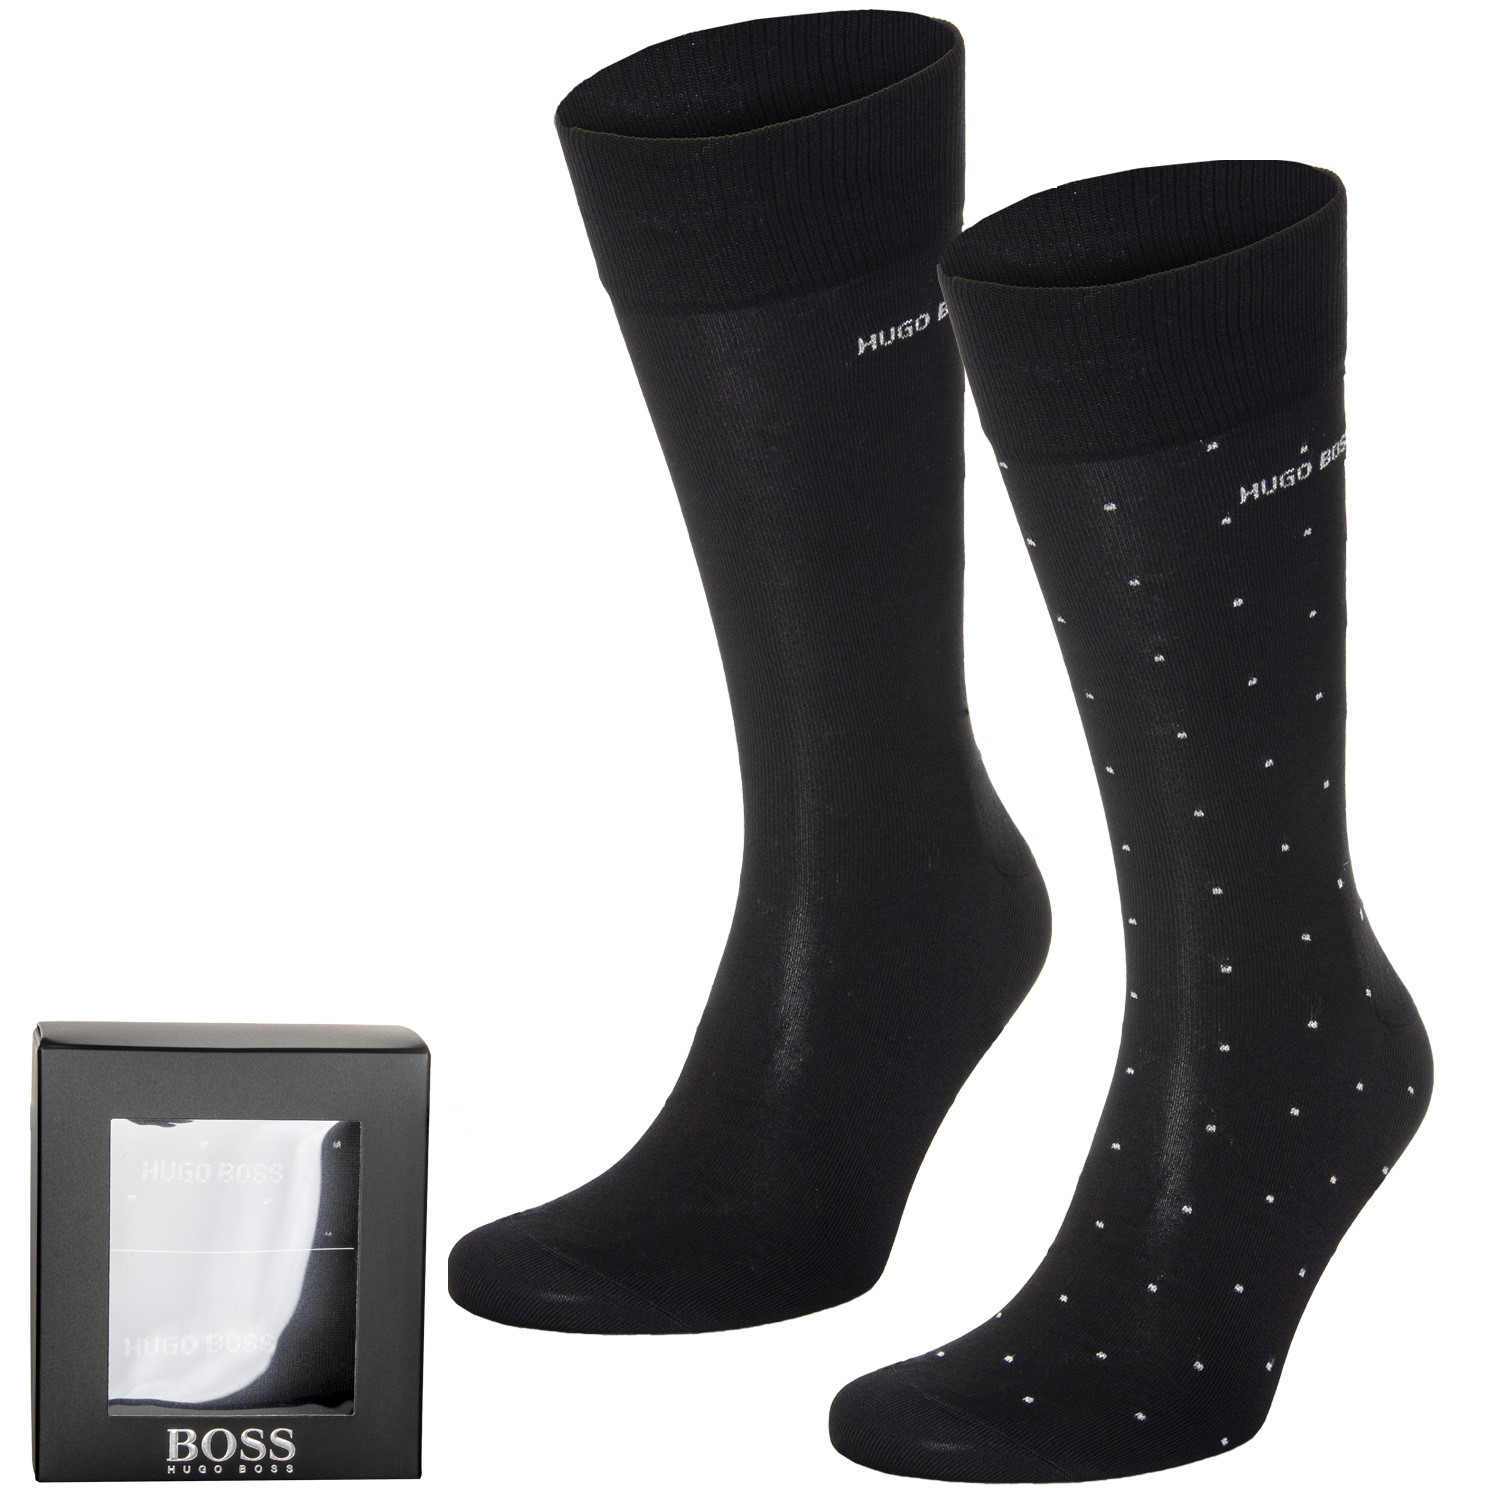 BOSS RS Gift Set Mercerized Cotton Socks